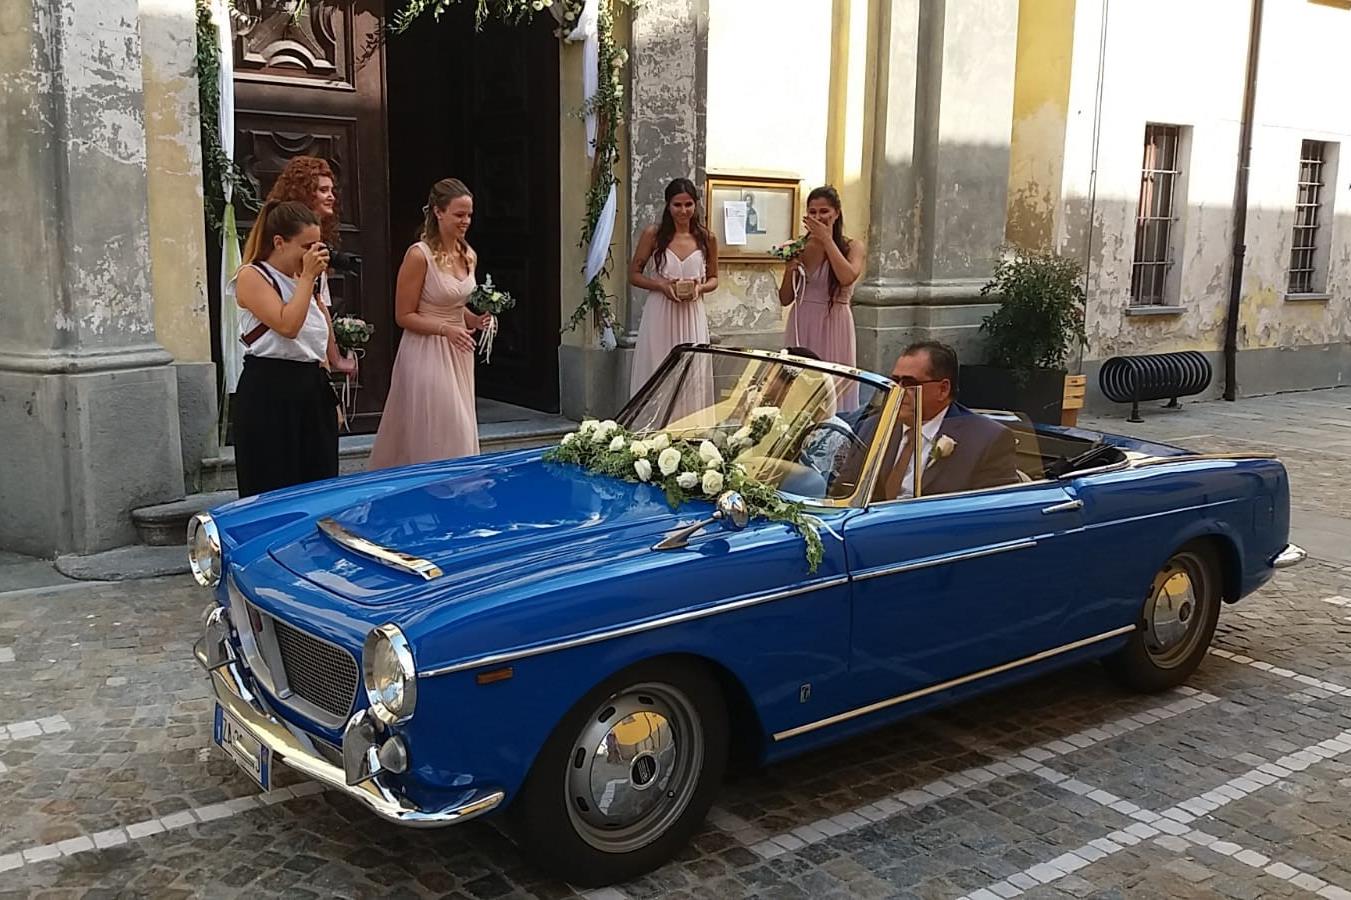 8--1500-Osca-Piemonte-cabriolet-Fiat-1500-Spider_matrimonio_cerimonia_evento_auto-depoca_classic-car_wedding_events_ceremony_classic-car-rental.jpg.jpg